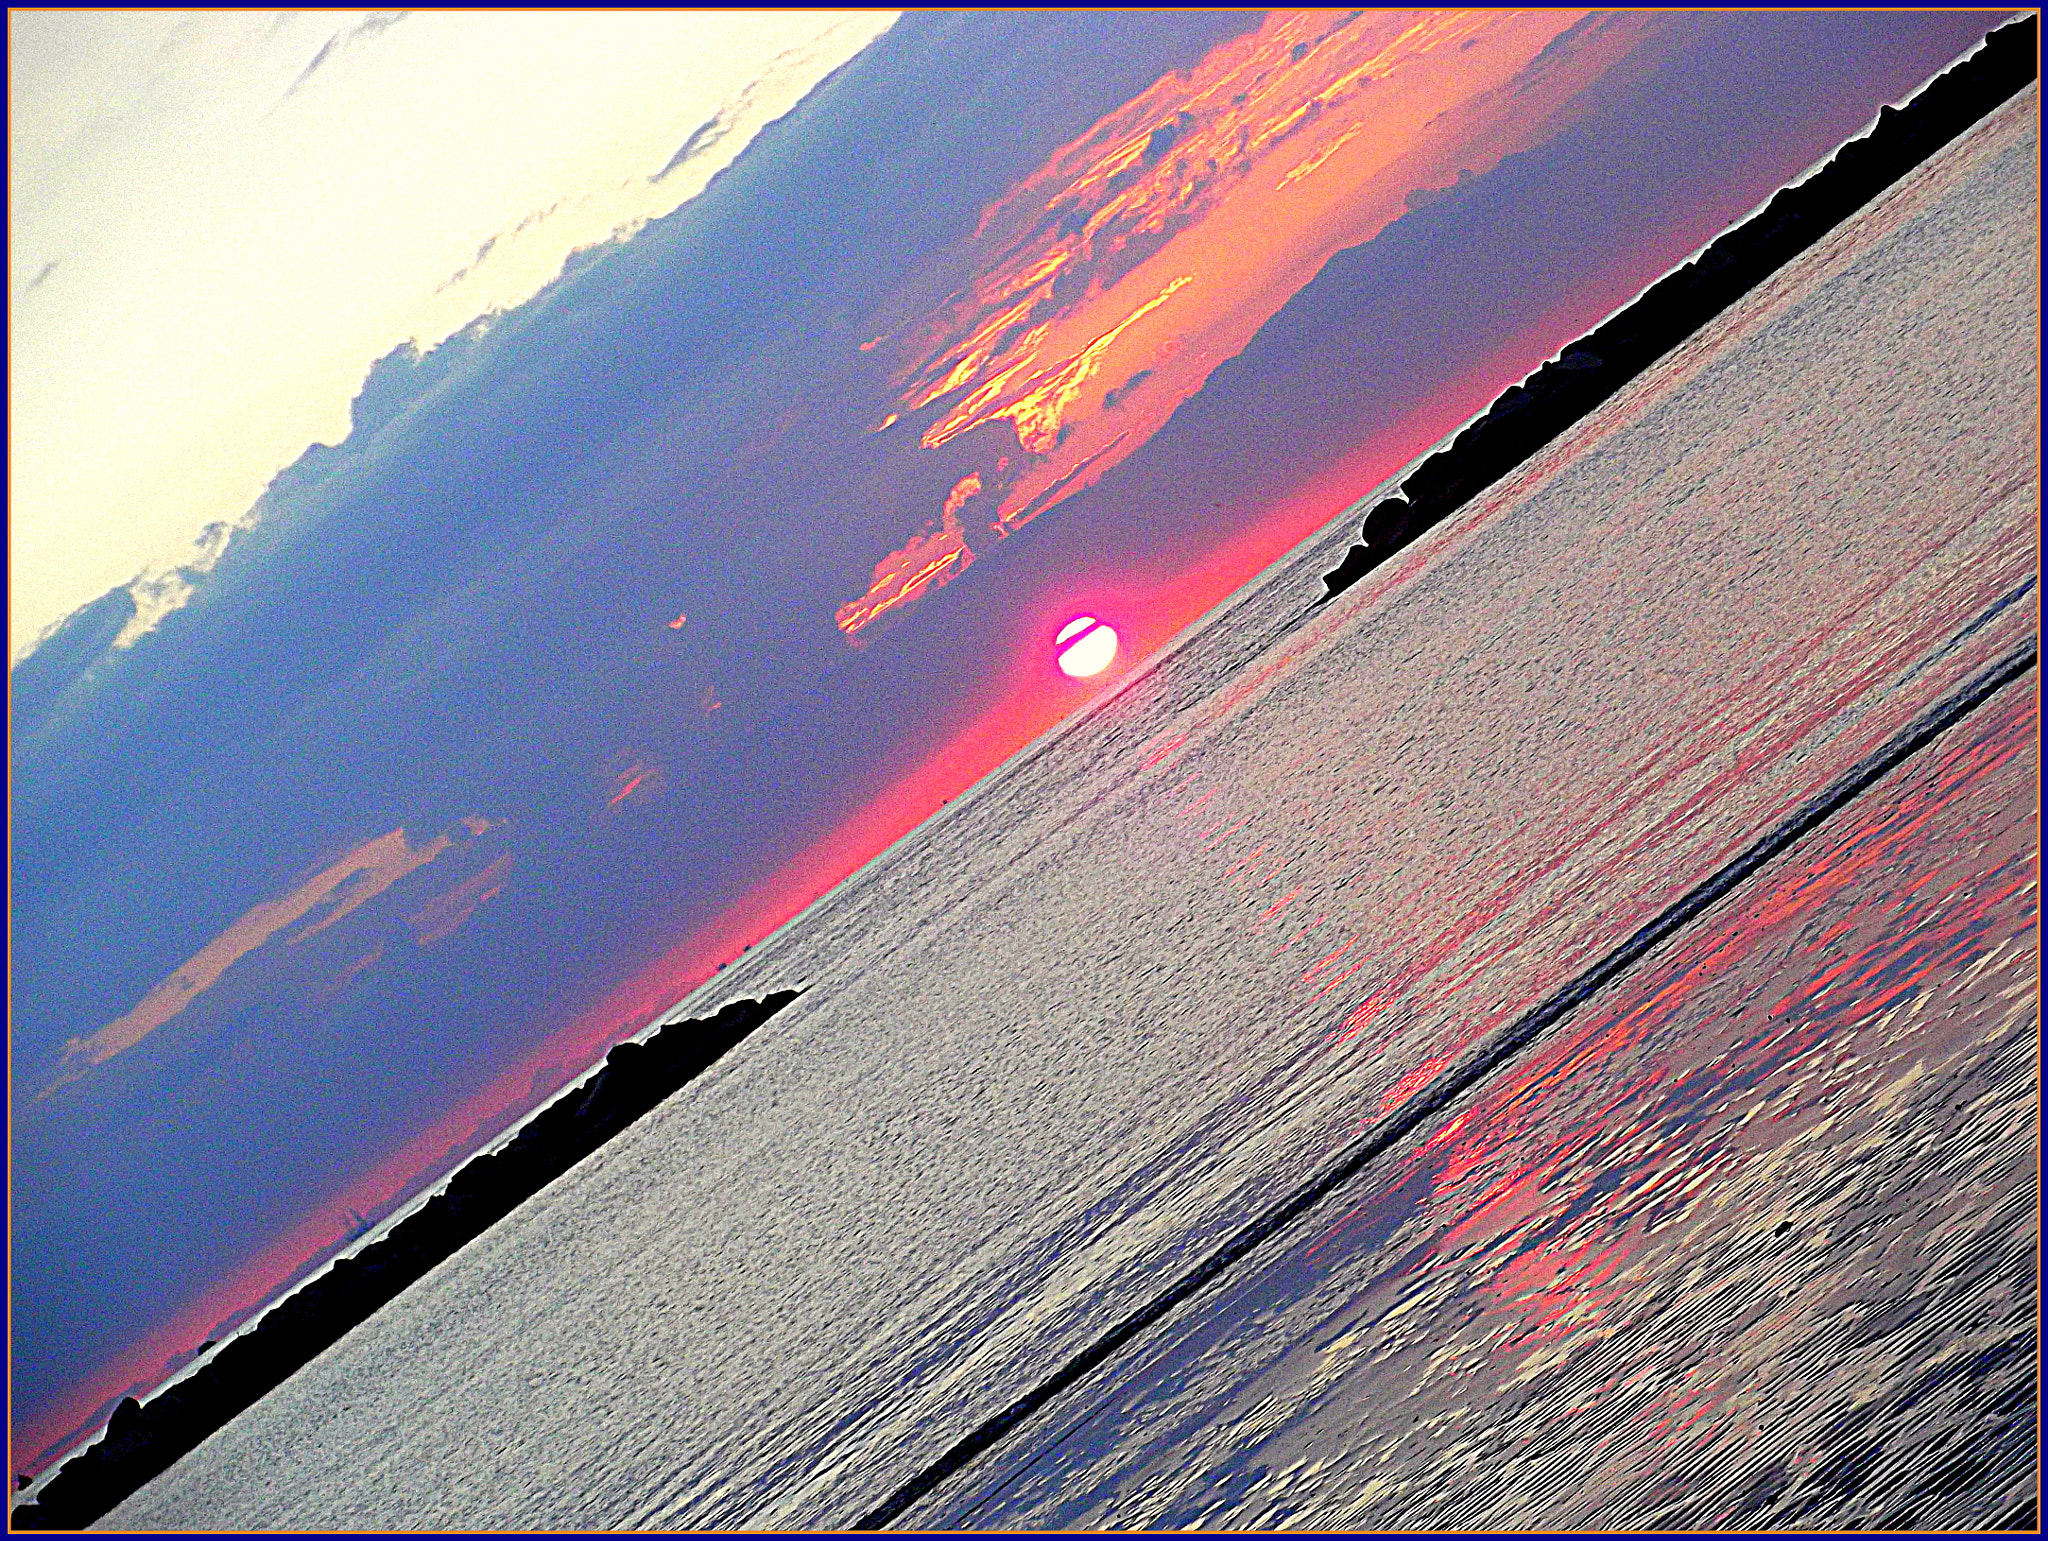 Fujifilm FinePix JX250 sample photo. Meravigliosa alba in diagonale sul mare di cesenatico, photography